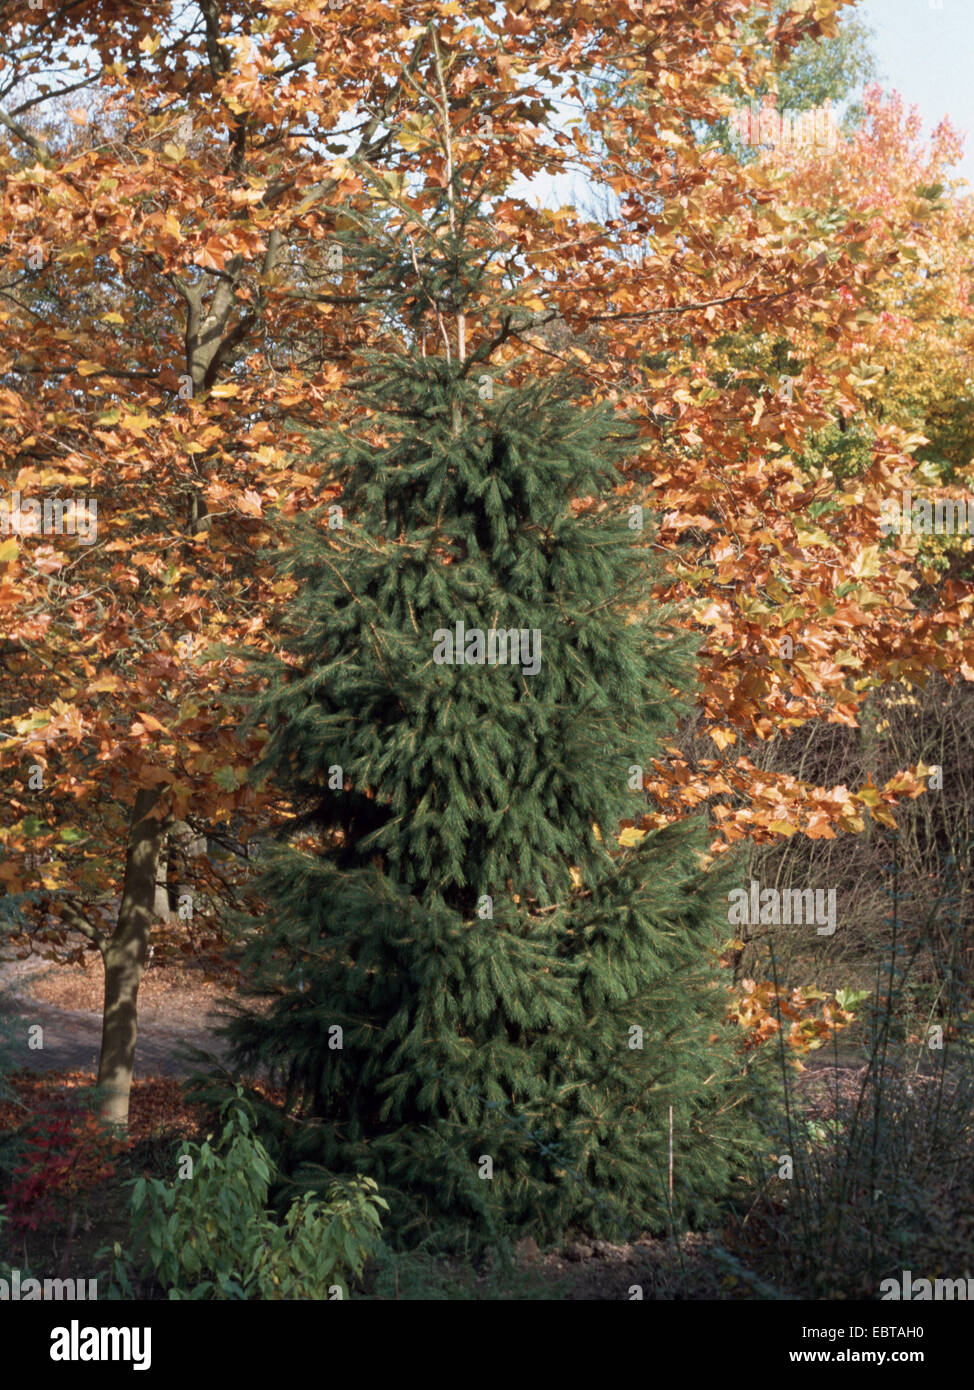 Picea smithiana (Picea smithiana), in an arboretum Stock Photo